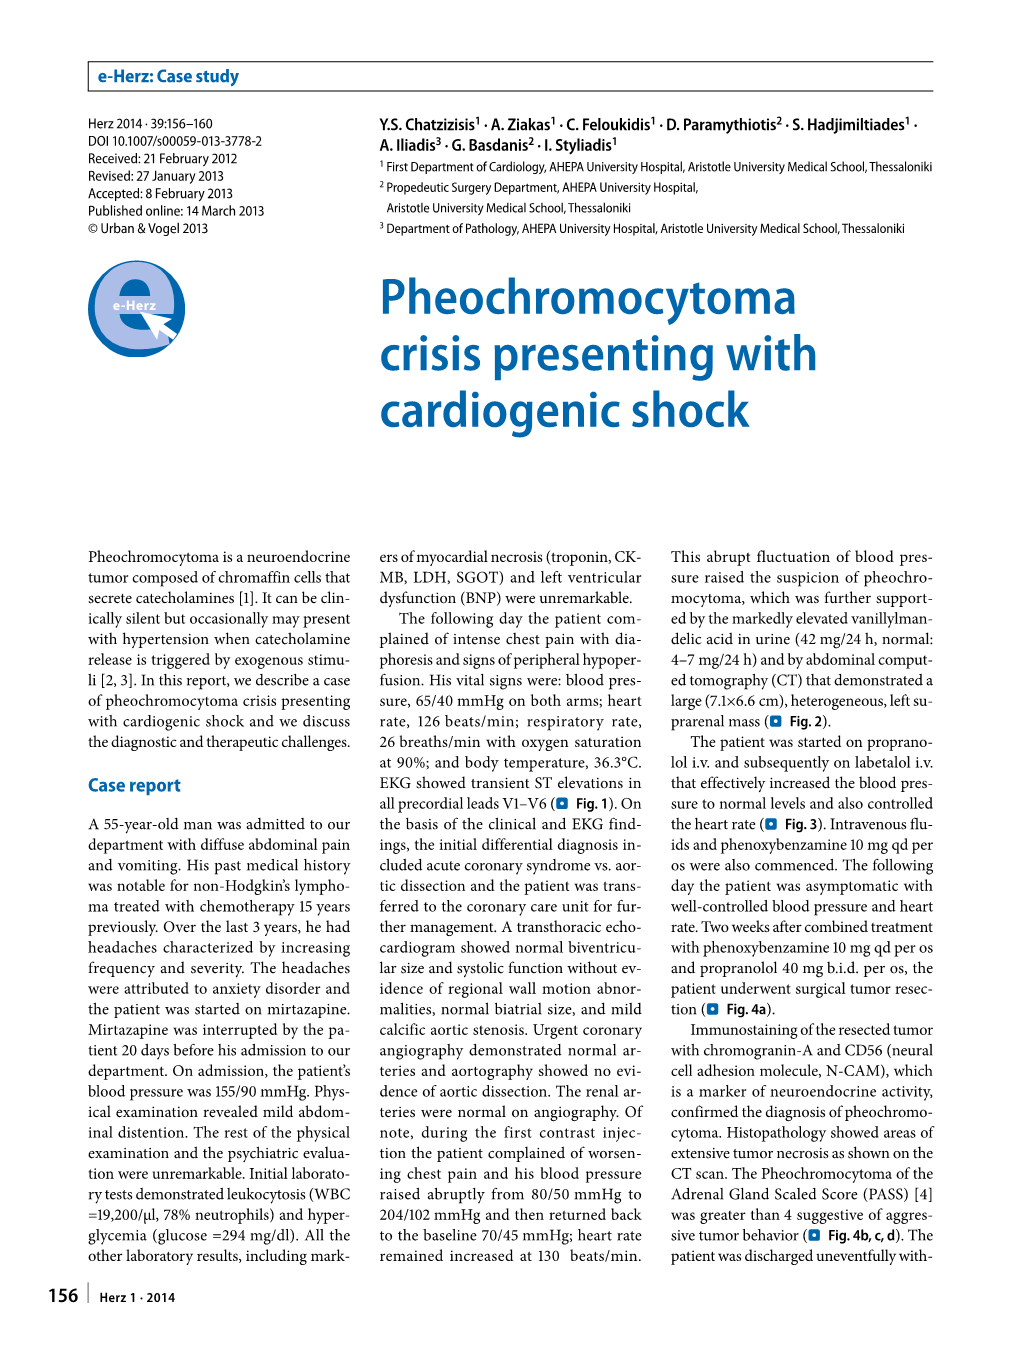 Pheochromocytoma Crisis Presenting with Cardiogenic Shock